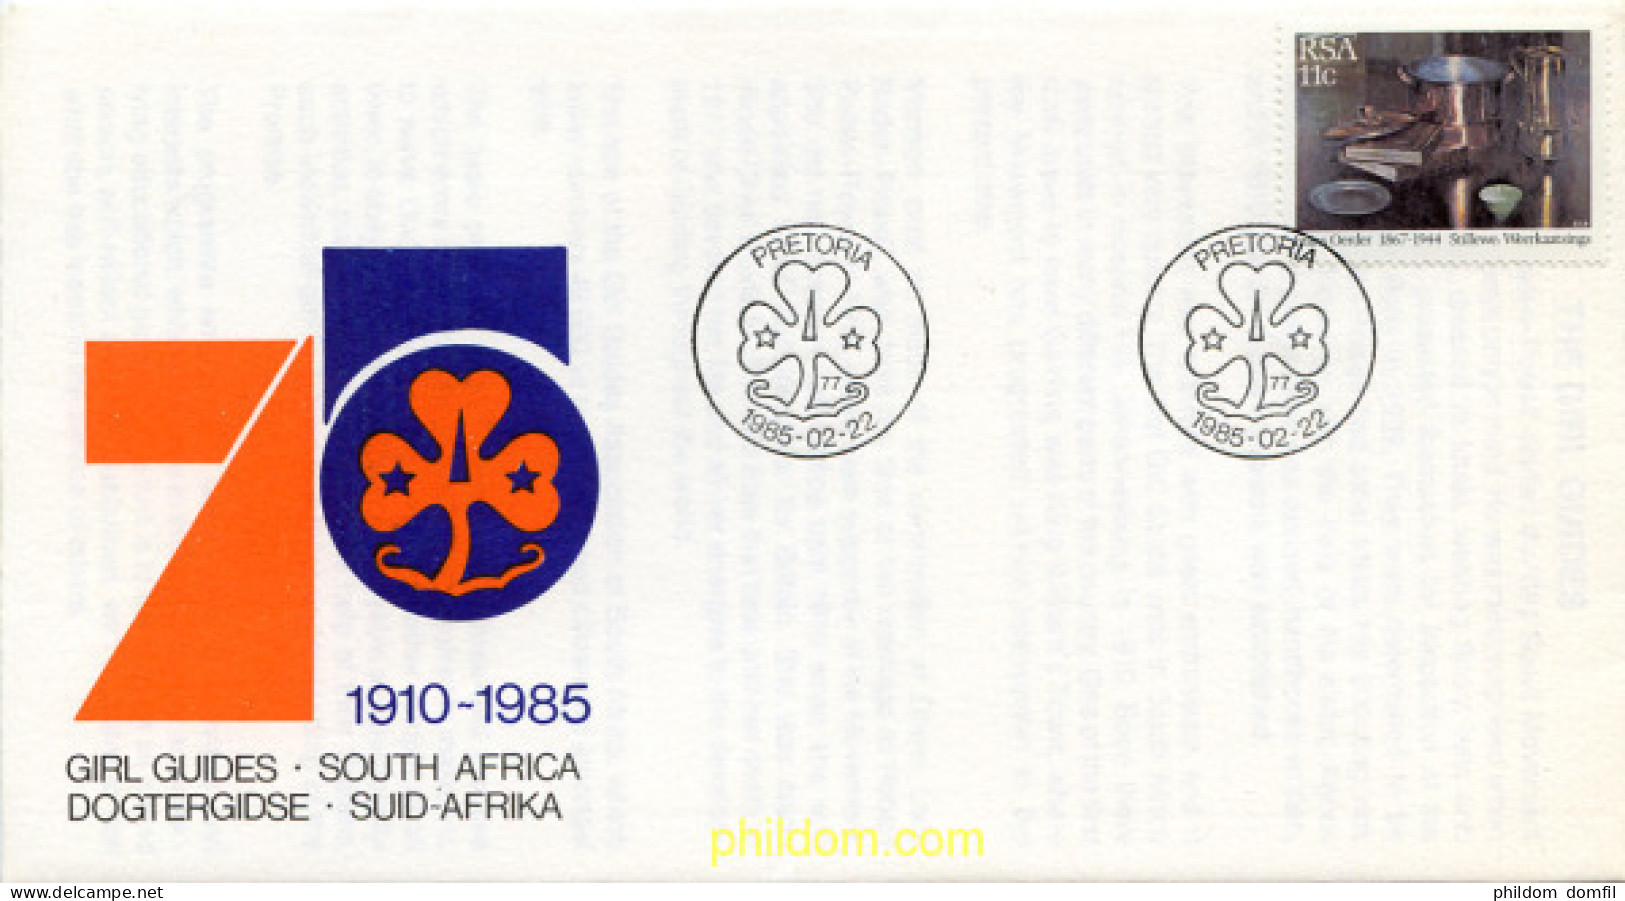 265383 USED SUDAFRICA 1985 PINTURAS - Unused Stamps